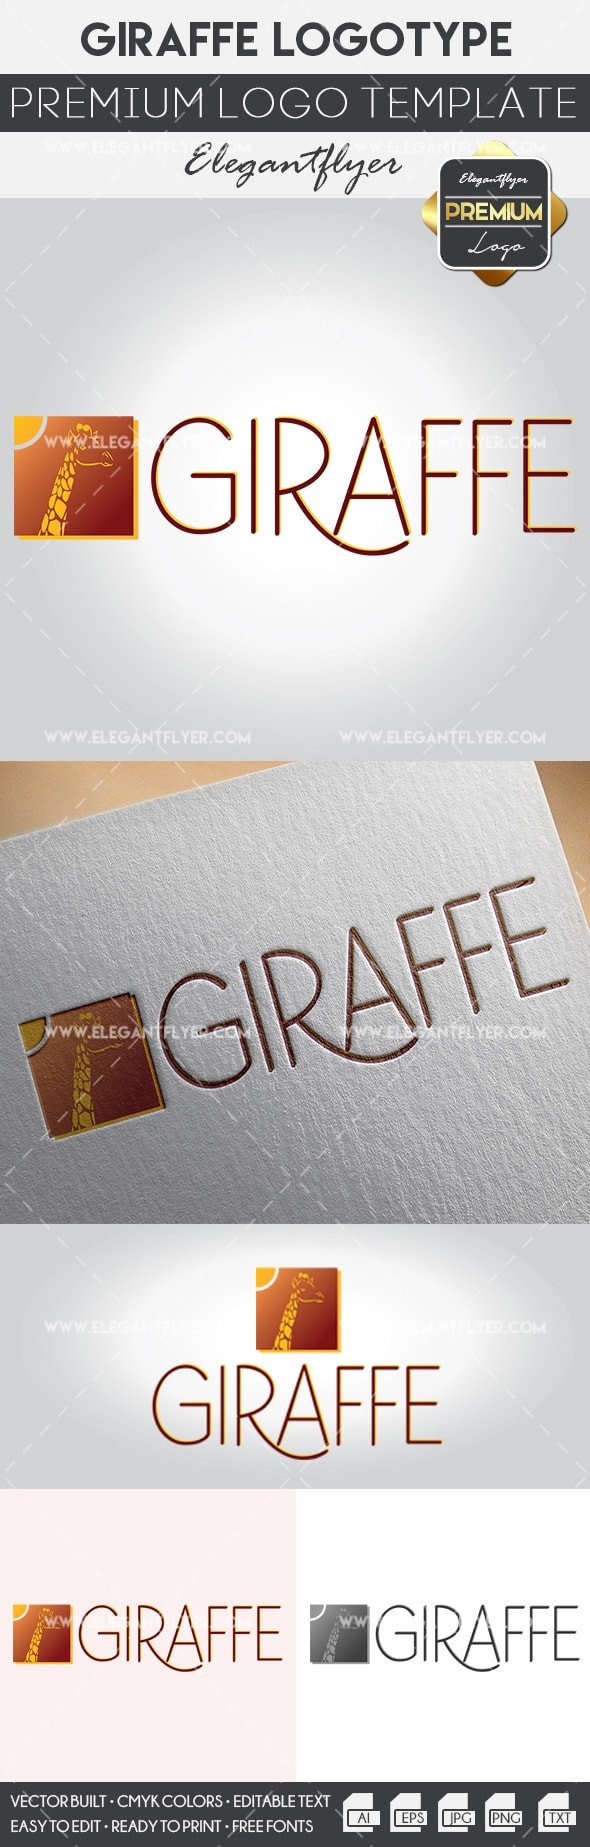 Giraffe Logo by ElegantFlyer